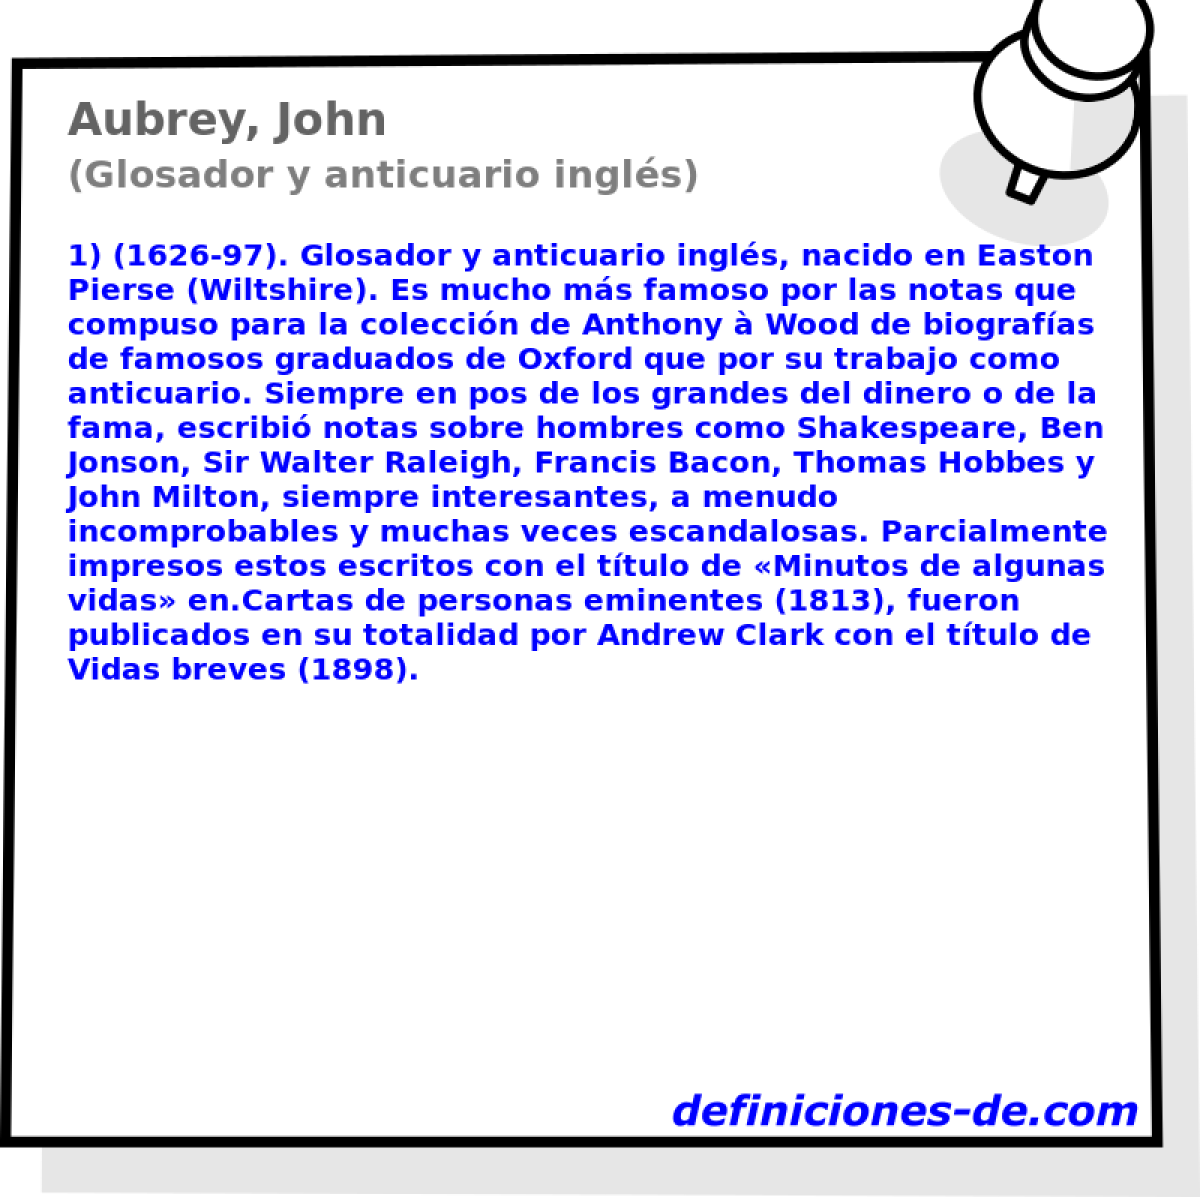 Aubrey, John (Glosador y anticuario ingls)